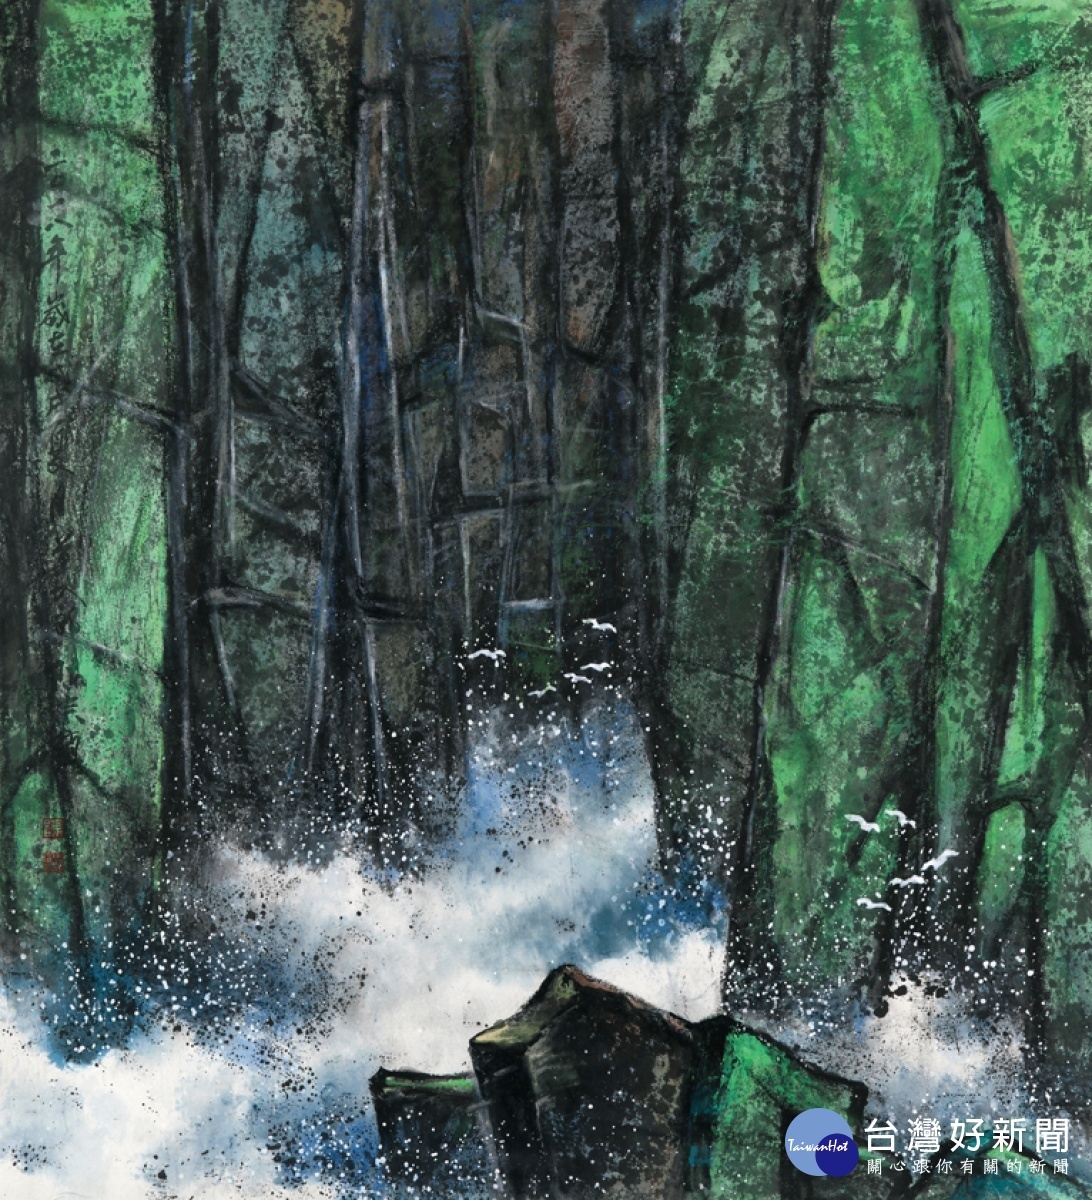 山水寄情─陳宗鎮紀念展 表達創作的「心象意念」作品